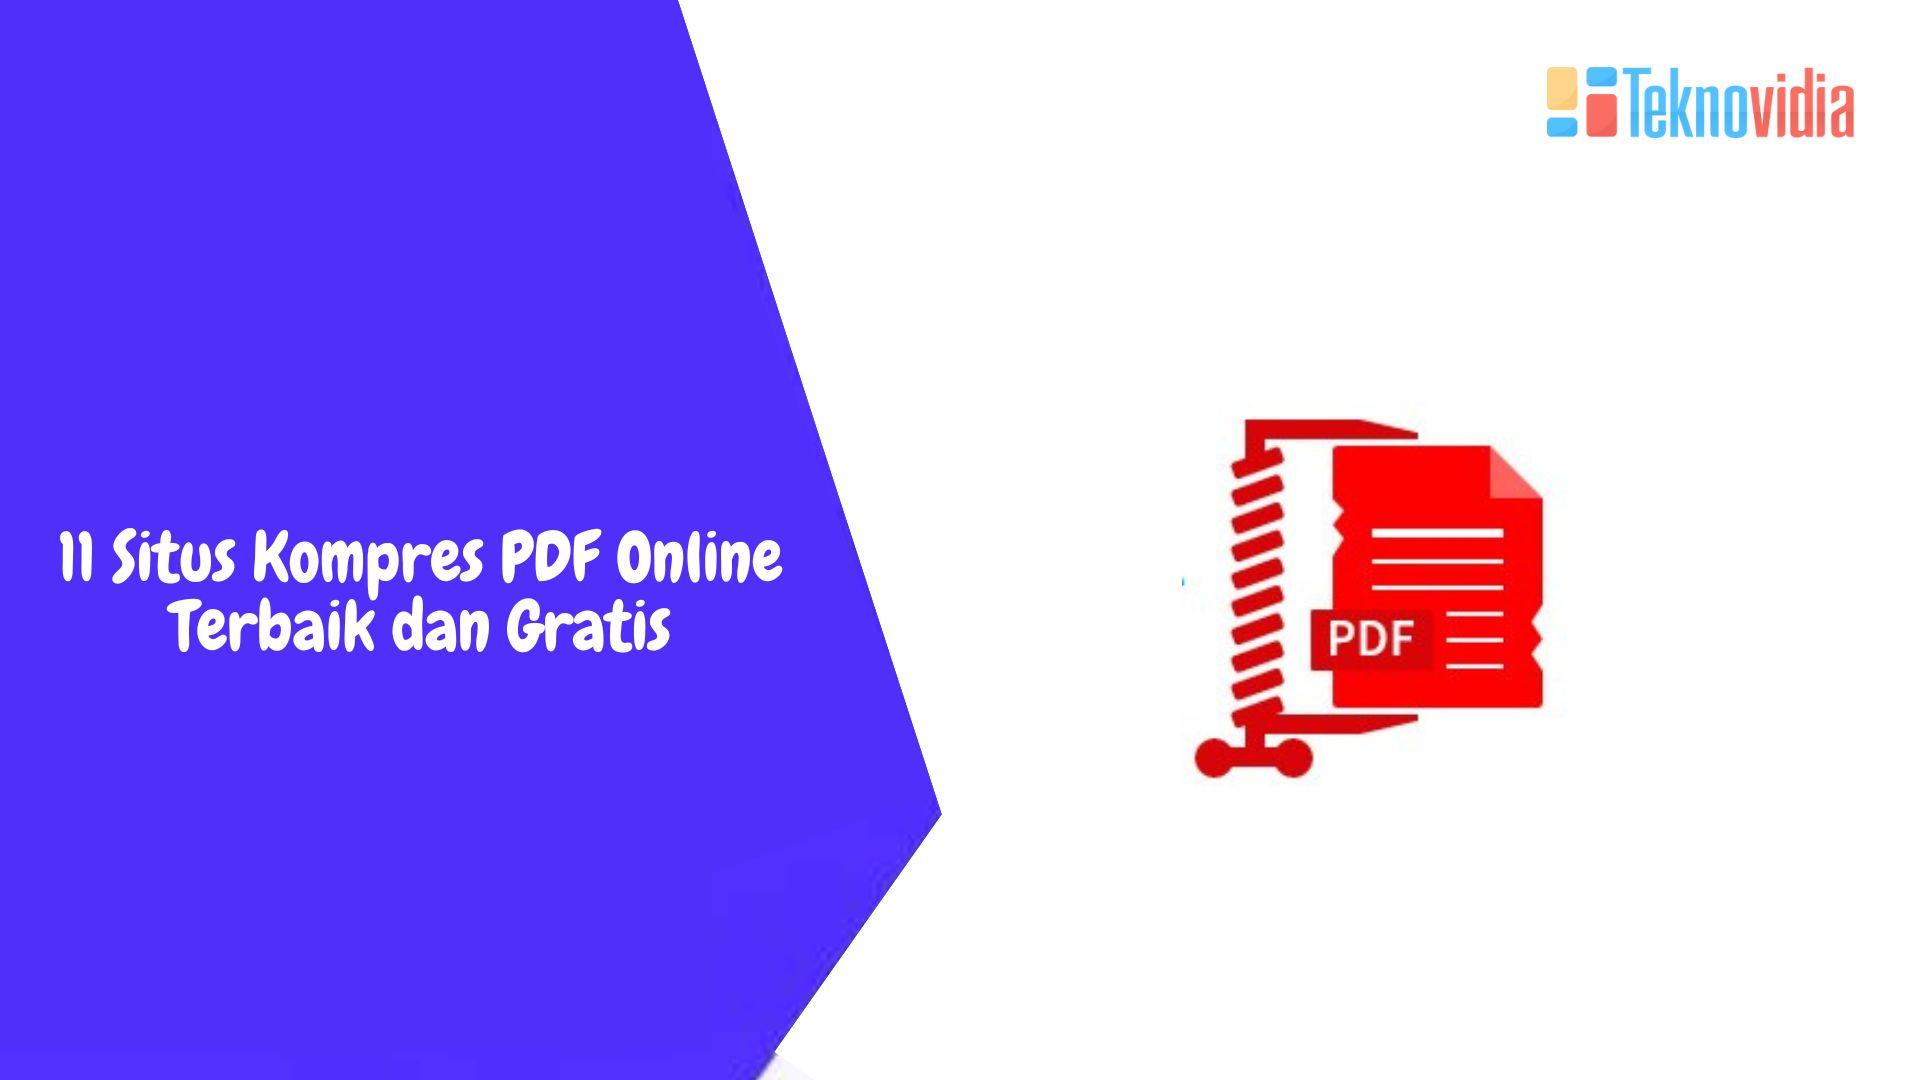 11 Situs Kompres PDF Online Terbaik dan Gratis